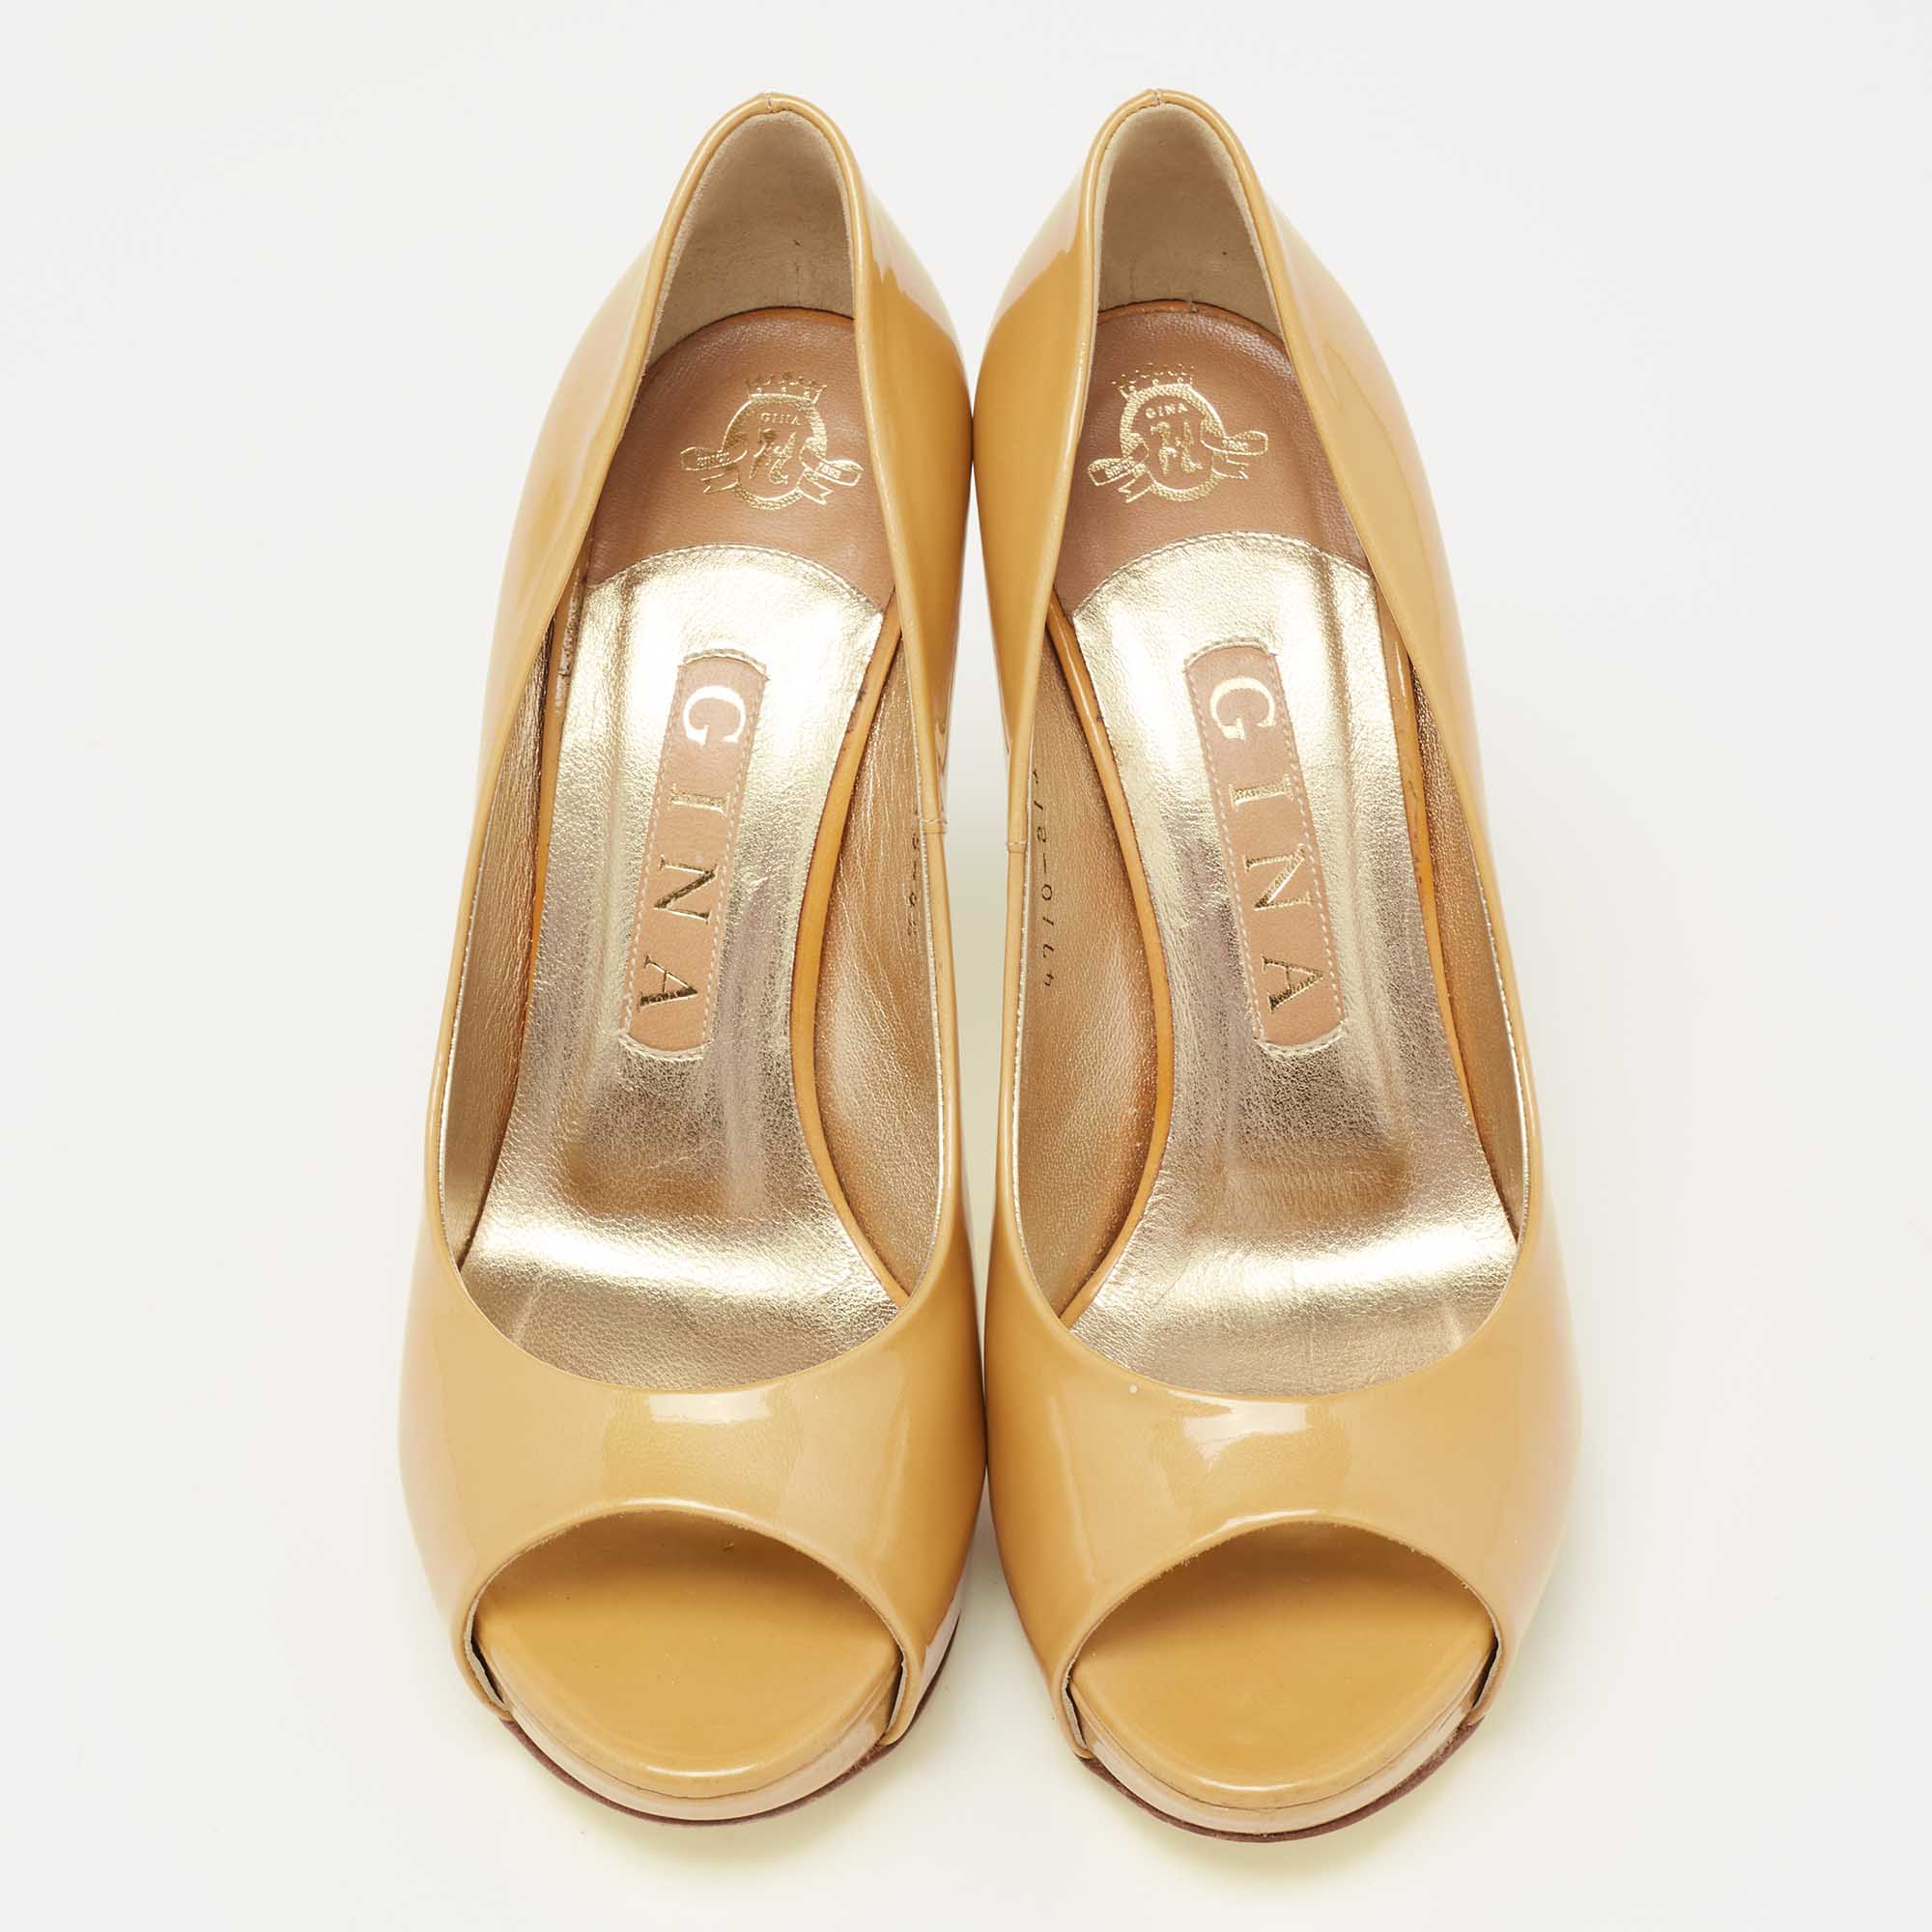 Gina Mustard Yellow Patent Leather Peep-Toe Pumps Size 37.5